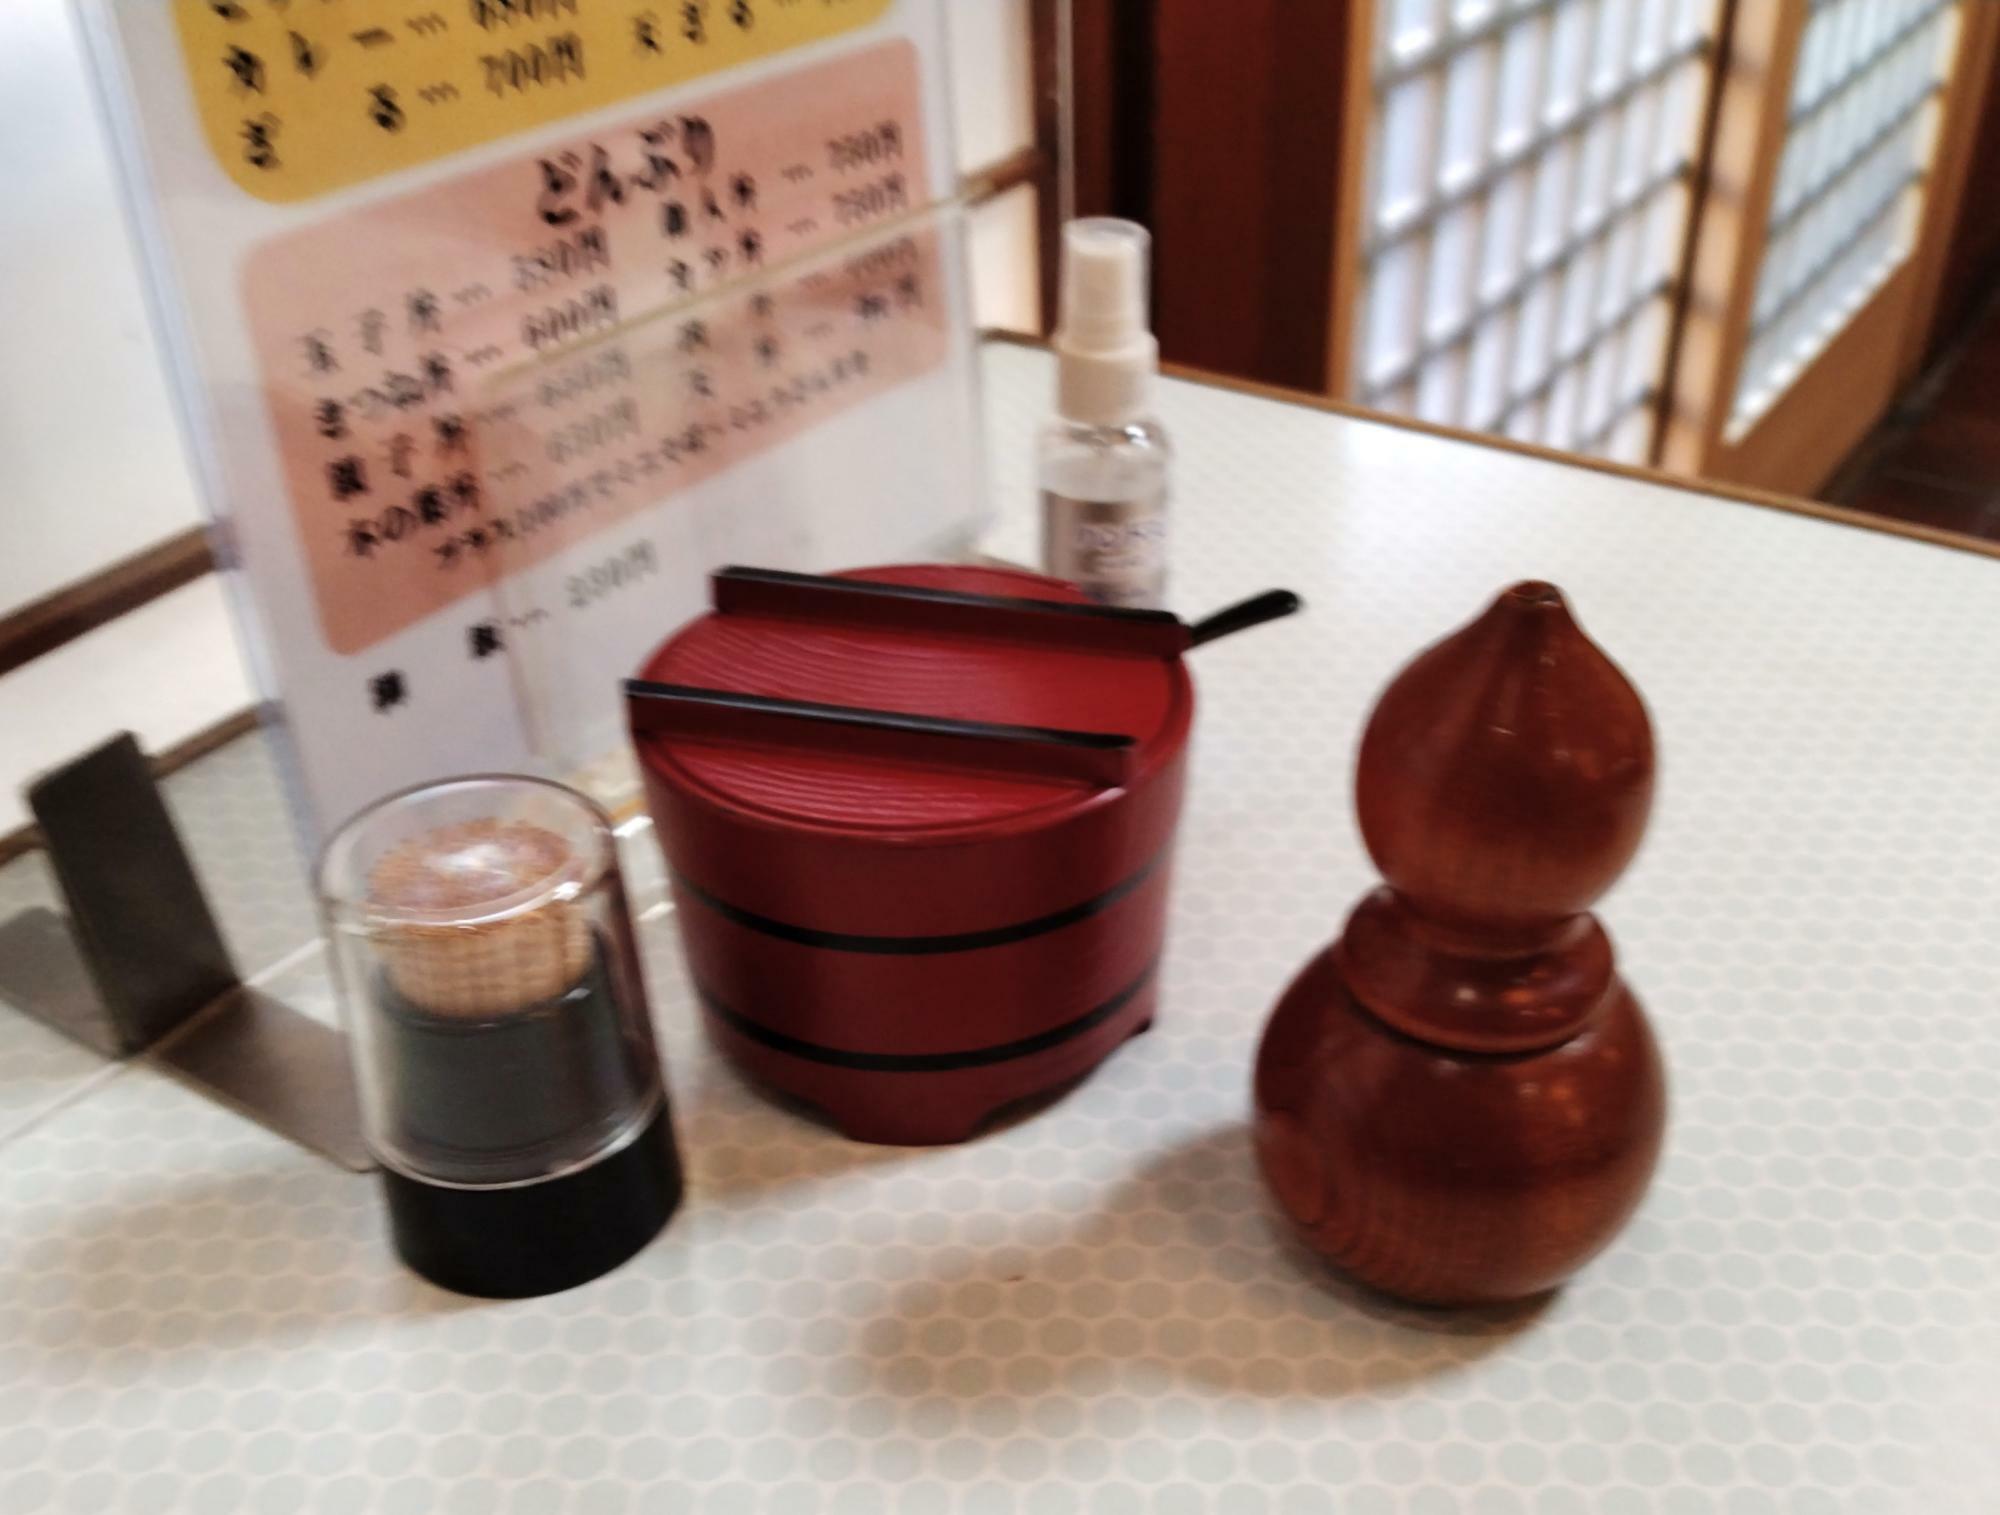 テーブルの上の小物も昭和レトロ感満載。